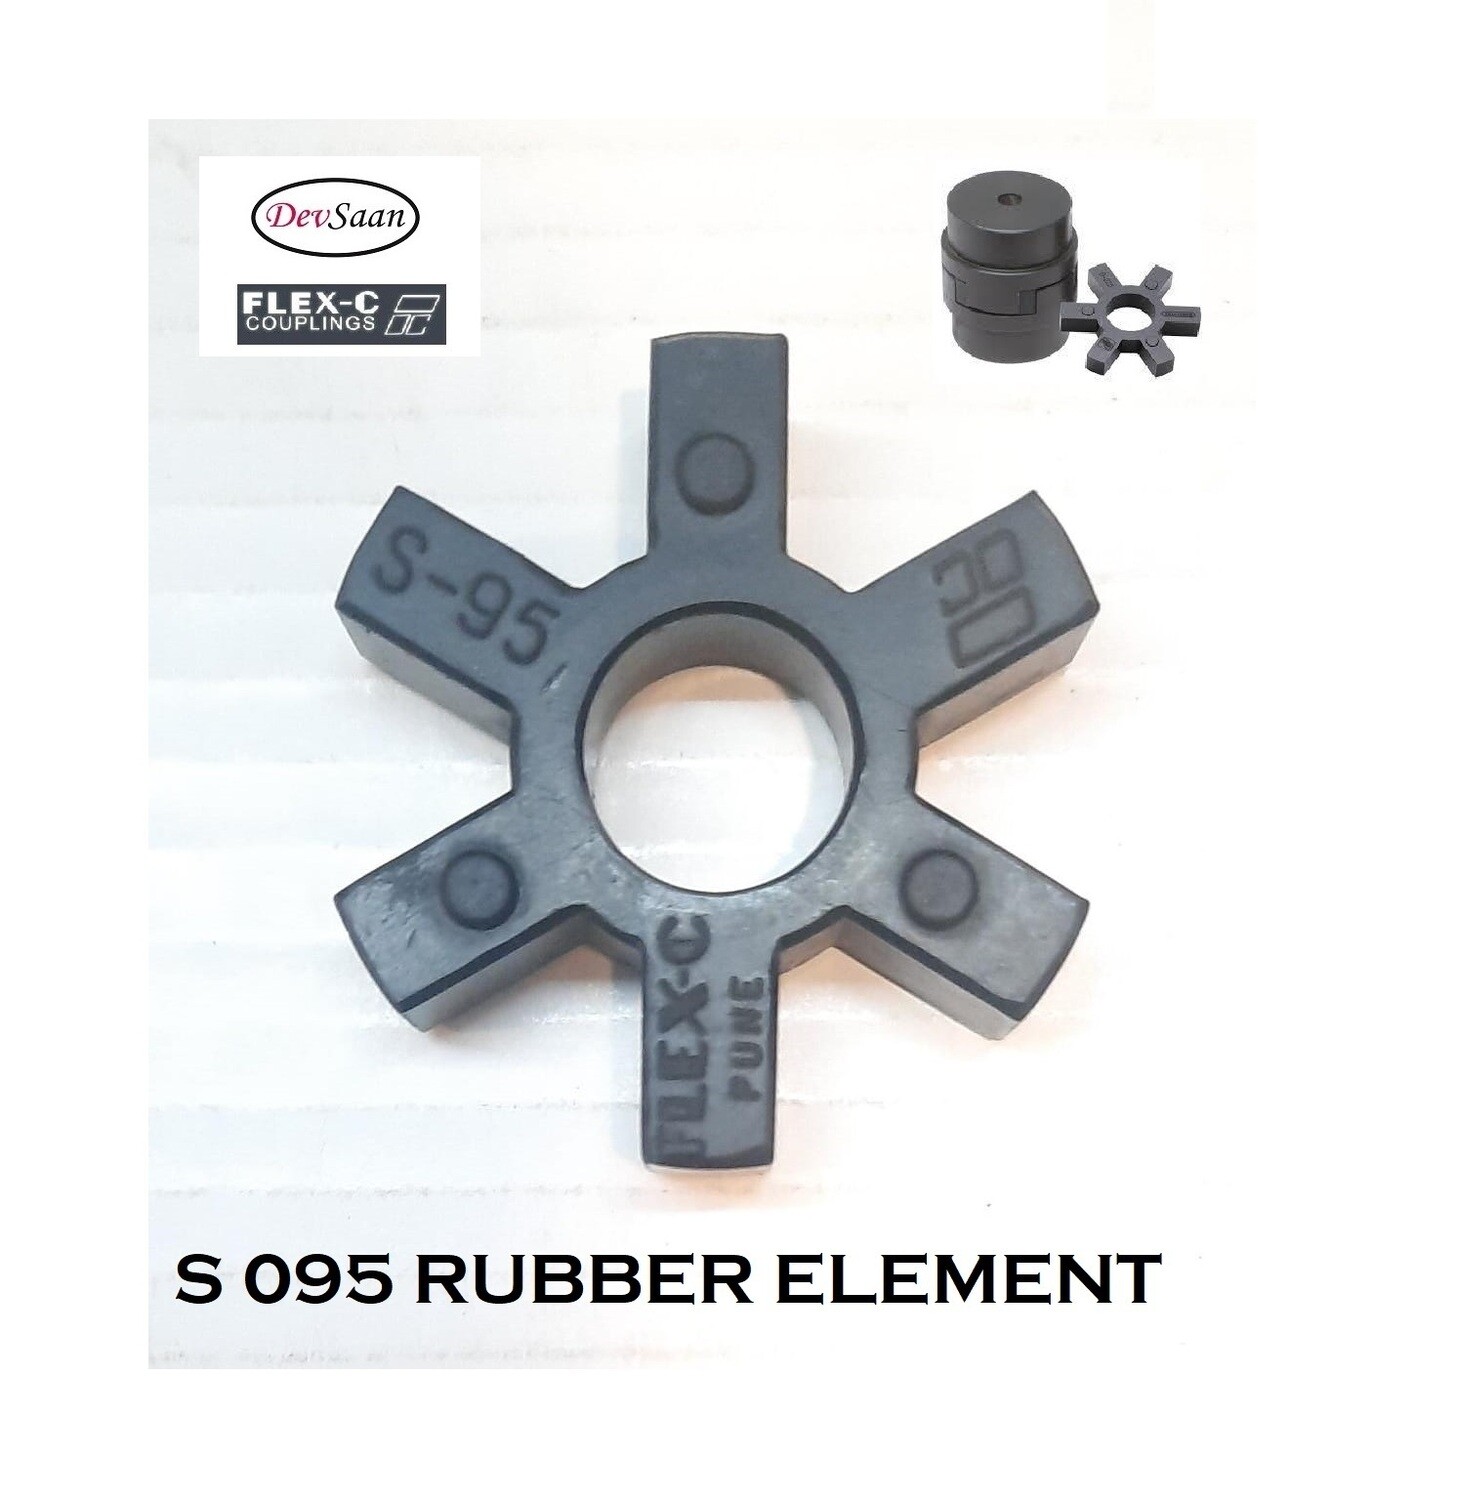 Coupling Rubber Element S 095 Flex-C